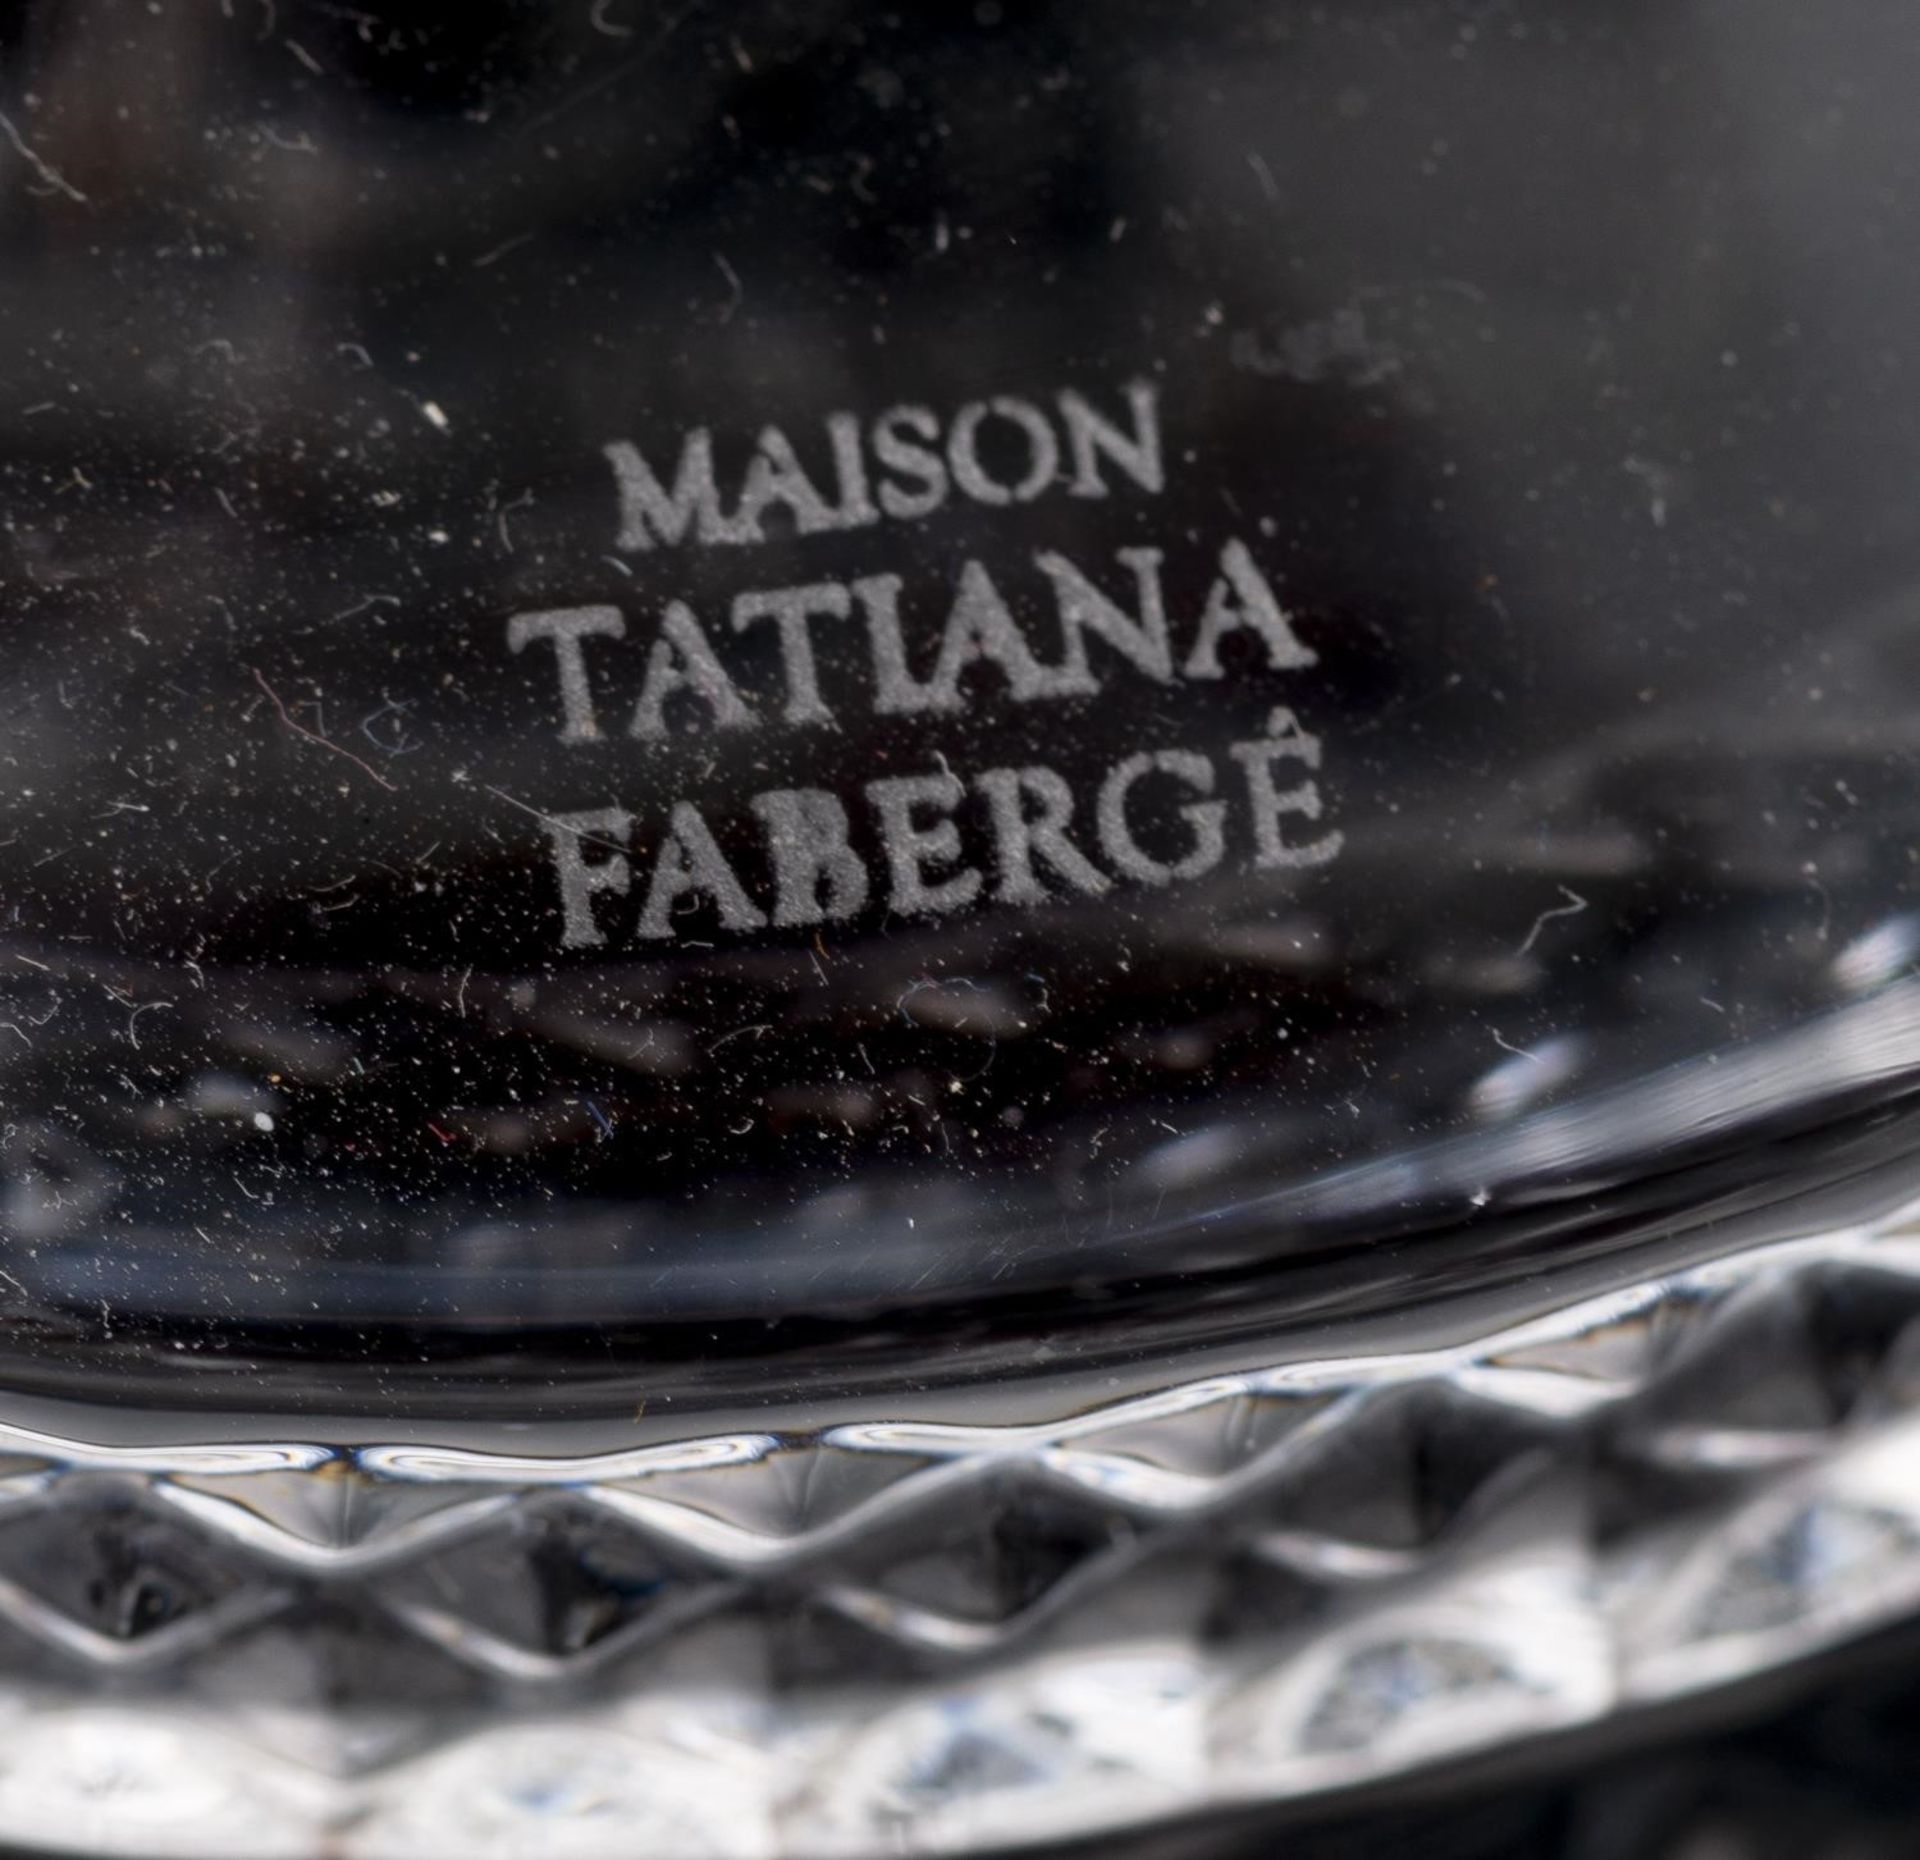 Maison Tatiana Fabergé, oeuf en cristal taillé et teinté rouge s'ouvrant en deux [...] - Image 5 of 6